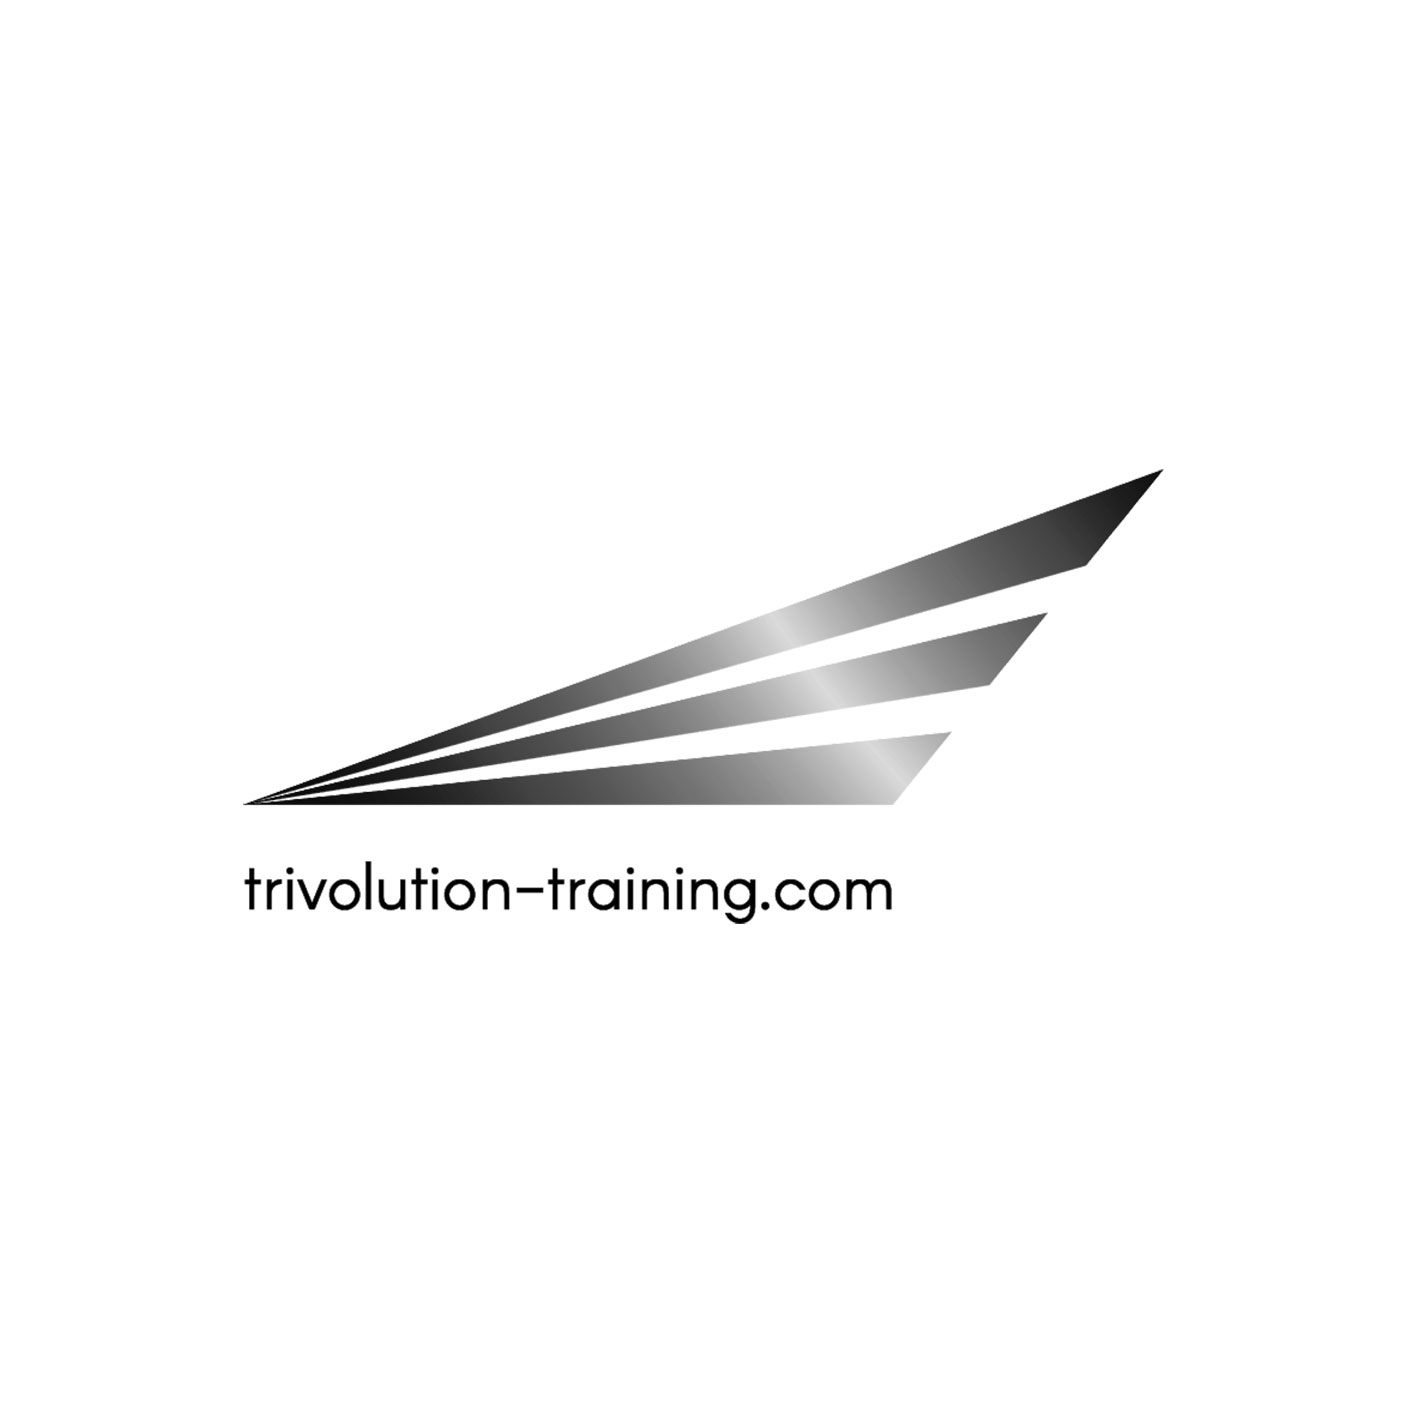 Trivolution Training